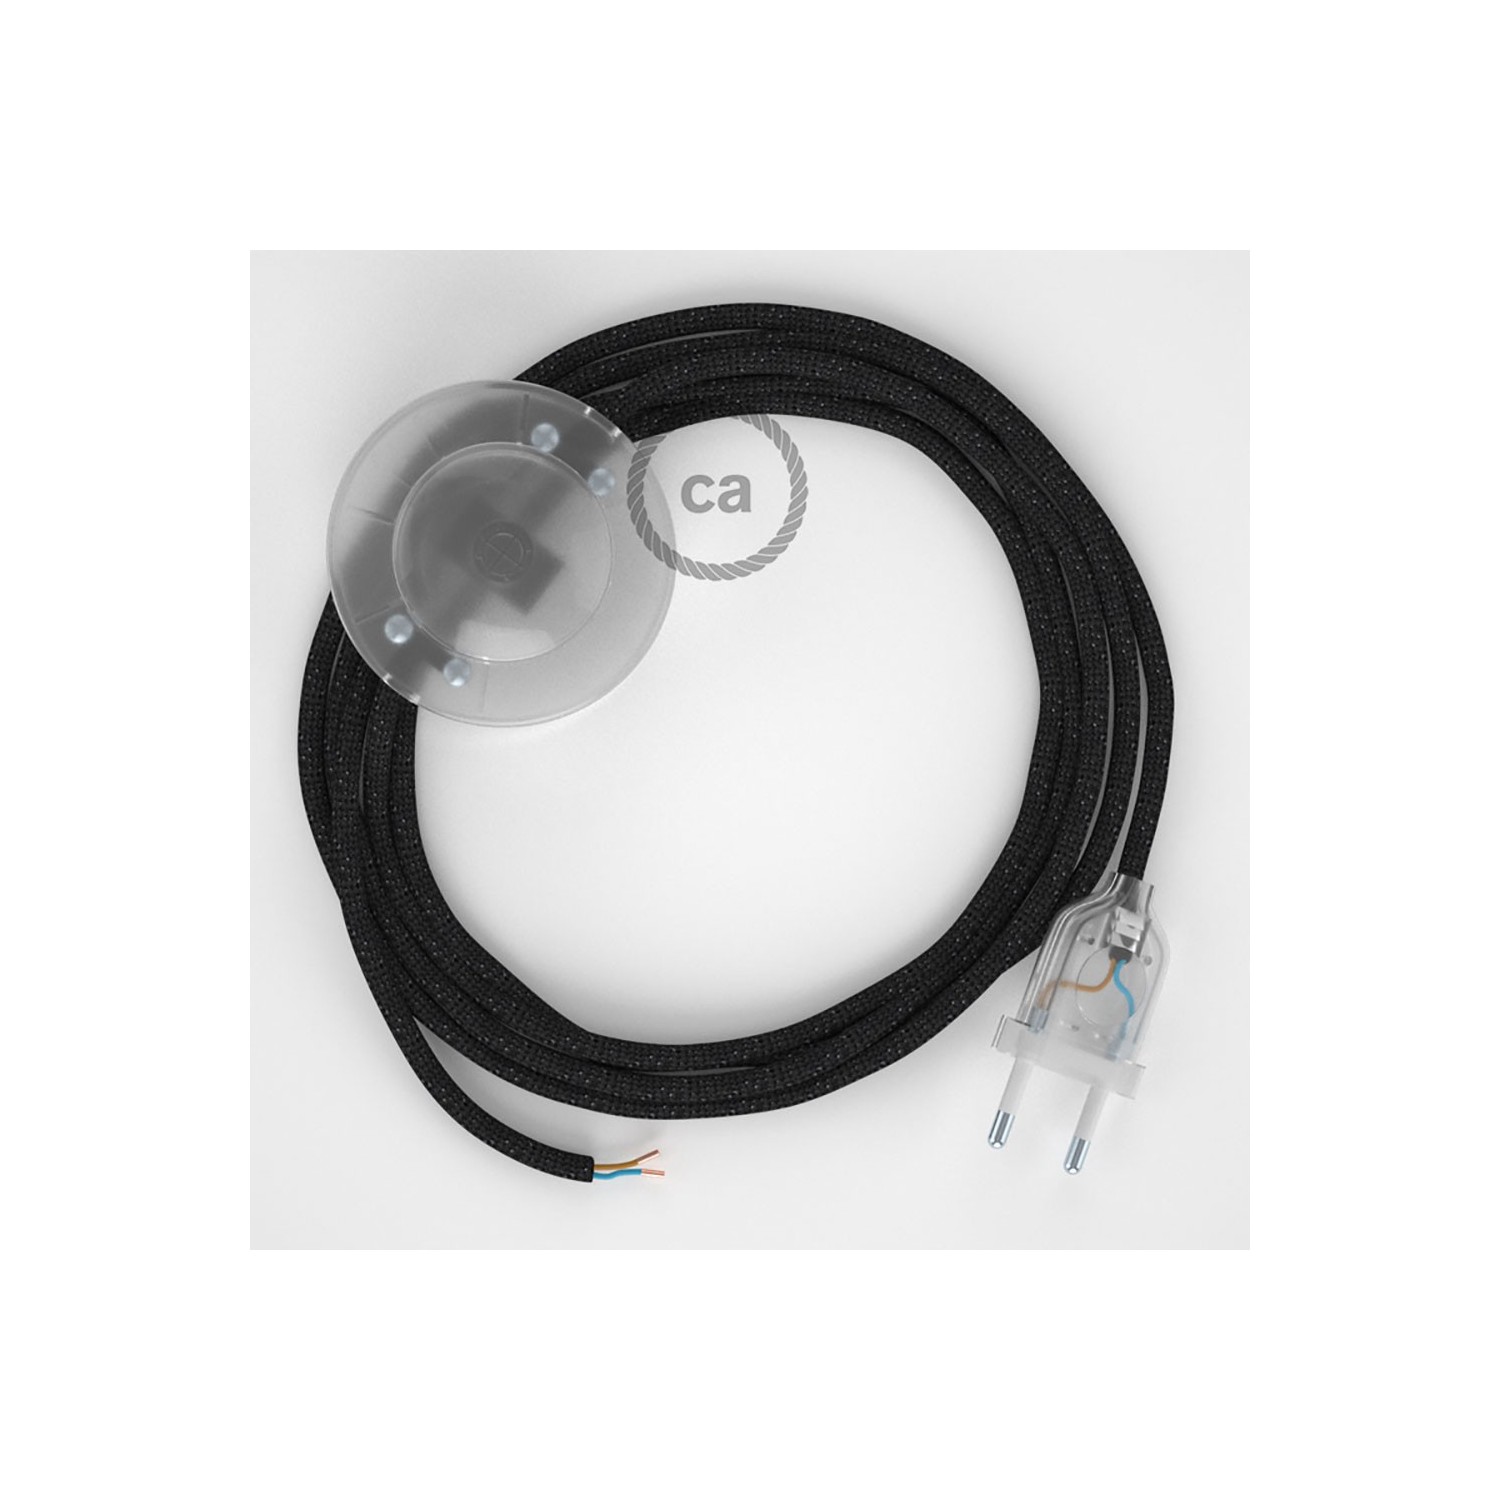 Cableado para lámpara de pie, cable RL04 Efecto Seda Glitter Negro 3 m. Elige tu el color de la clavija y del interruptor!